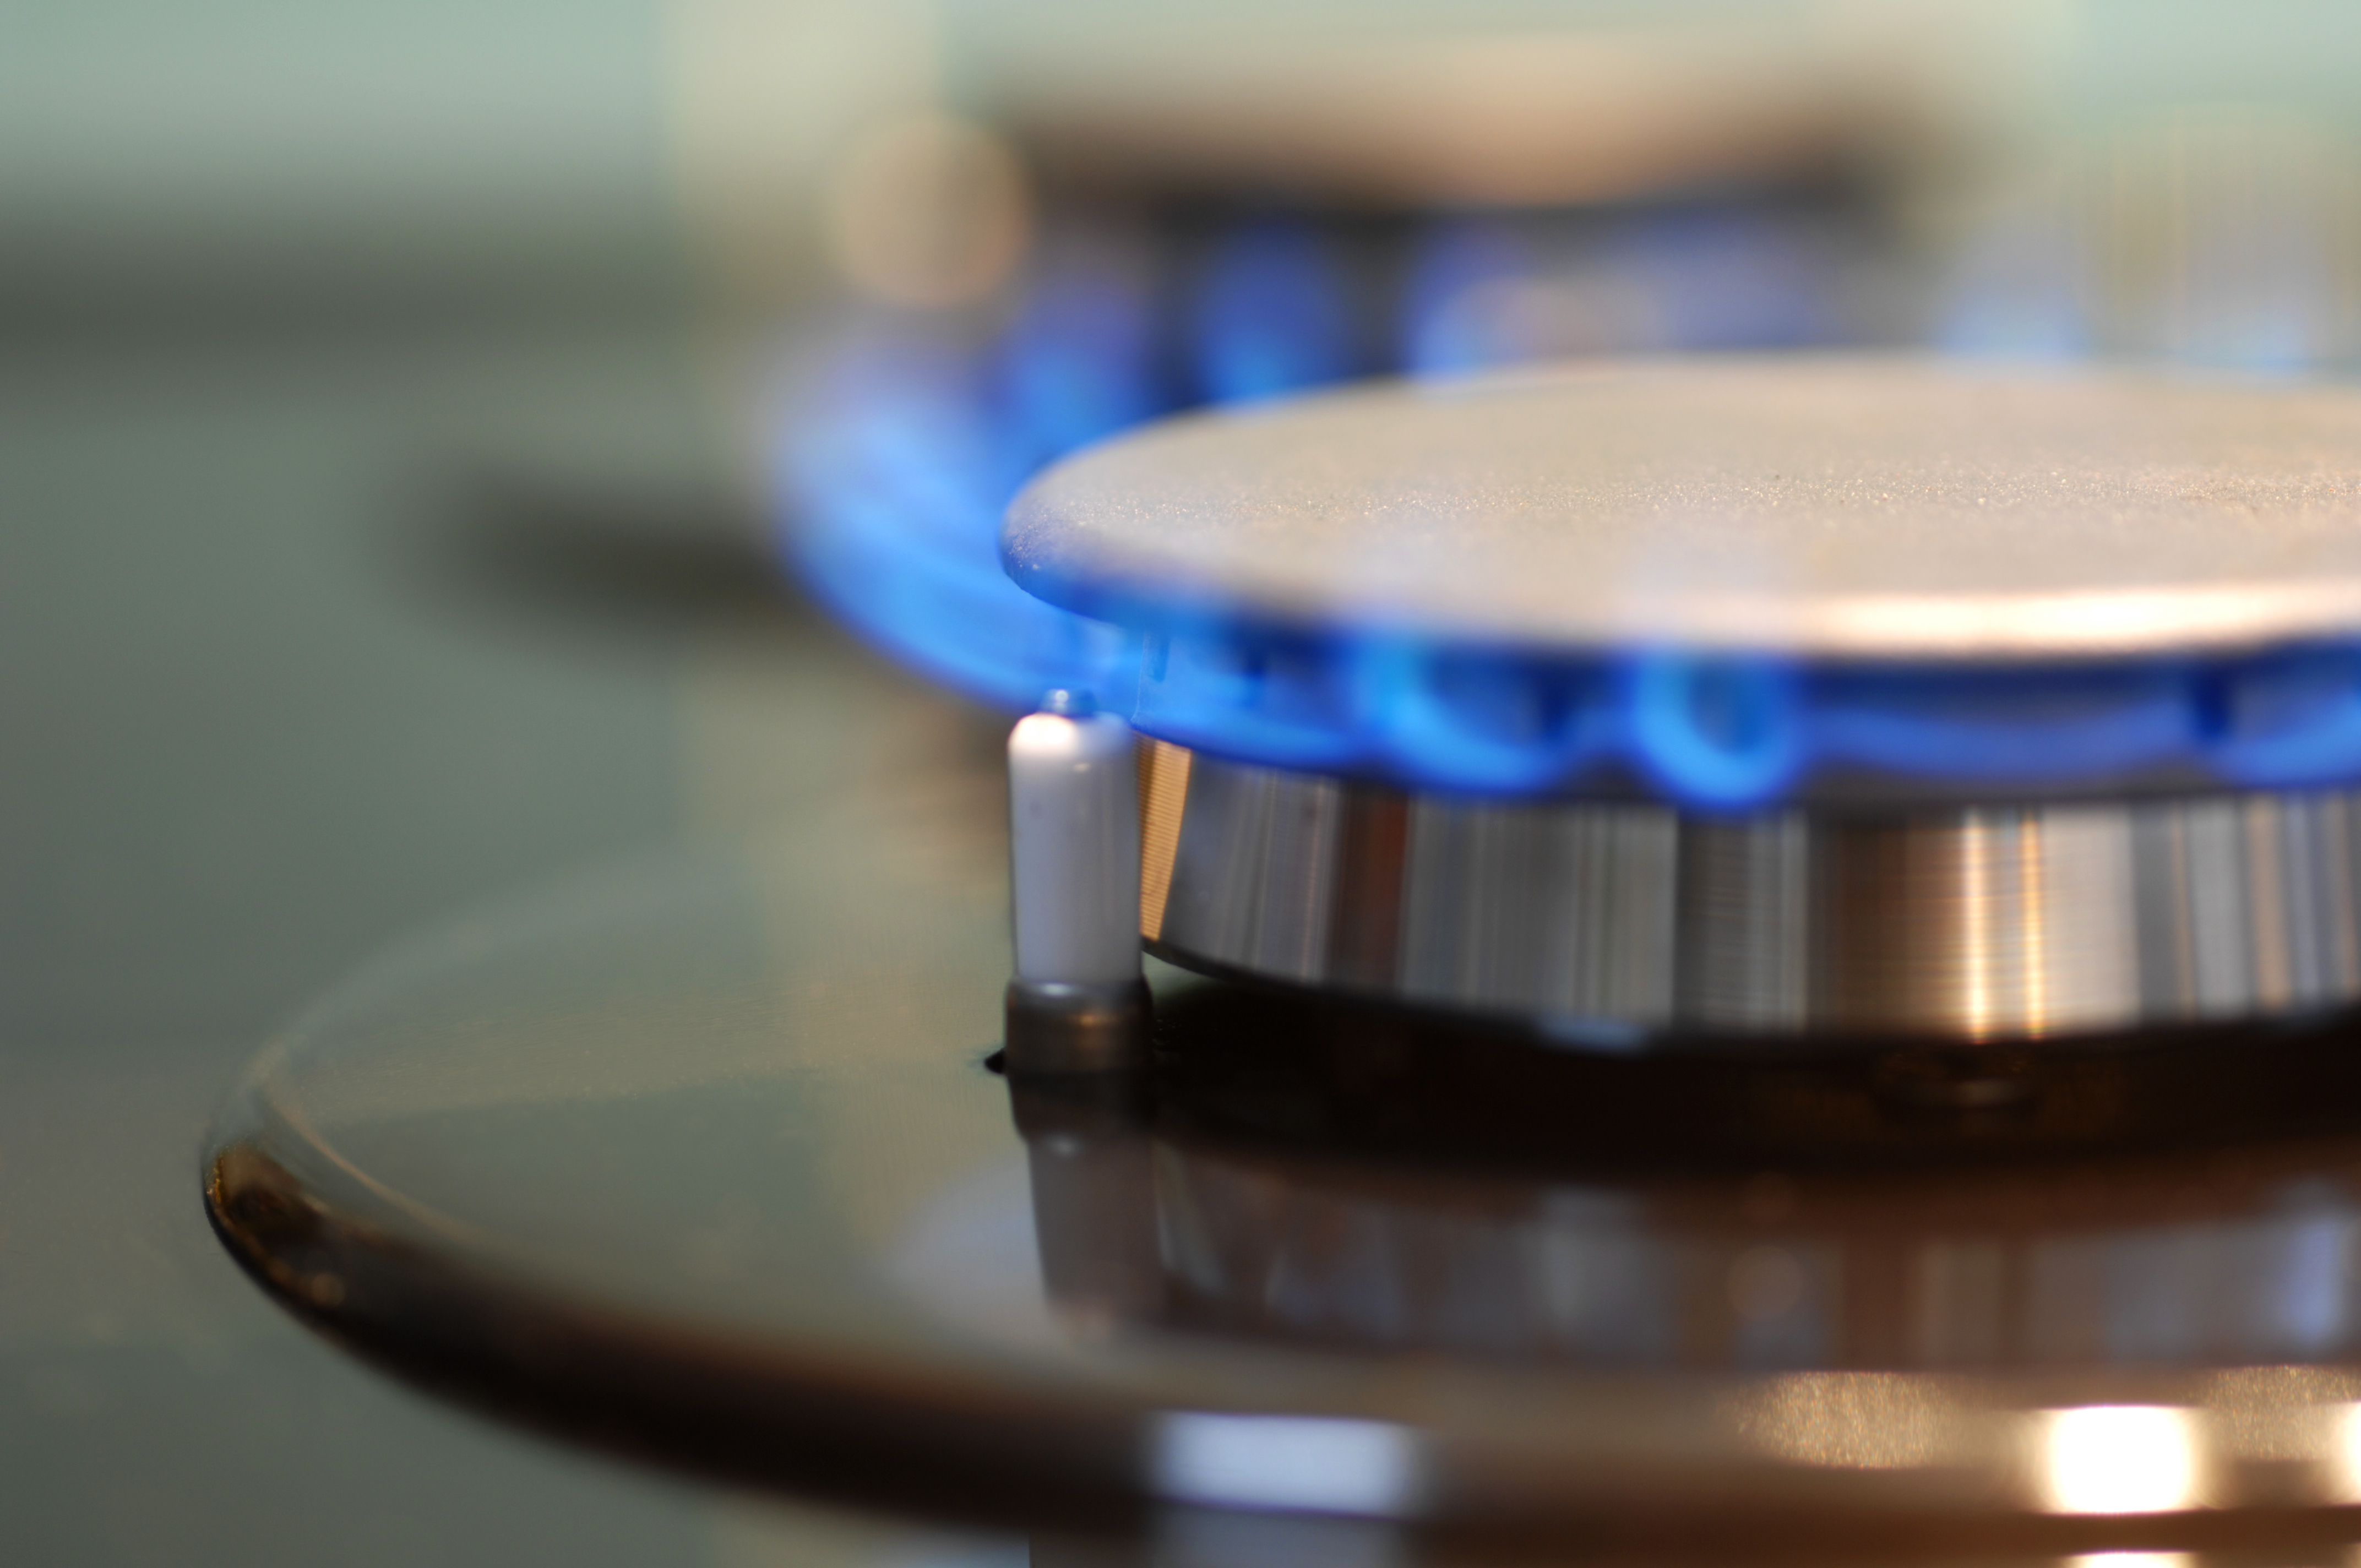 Agencia federal de EE.UU. considera la opción de prohibir las estufas de gas